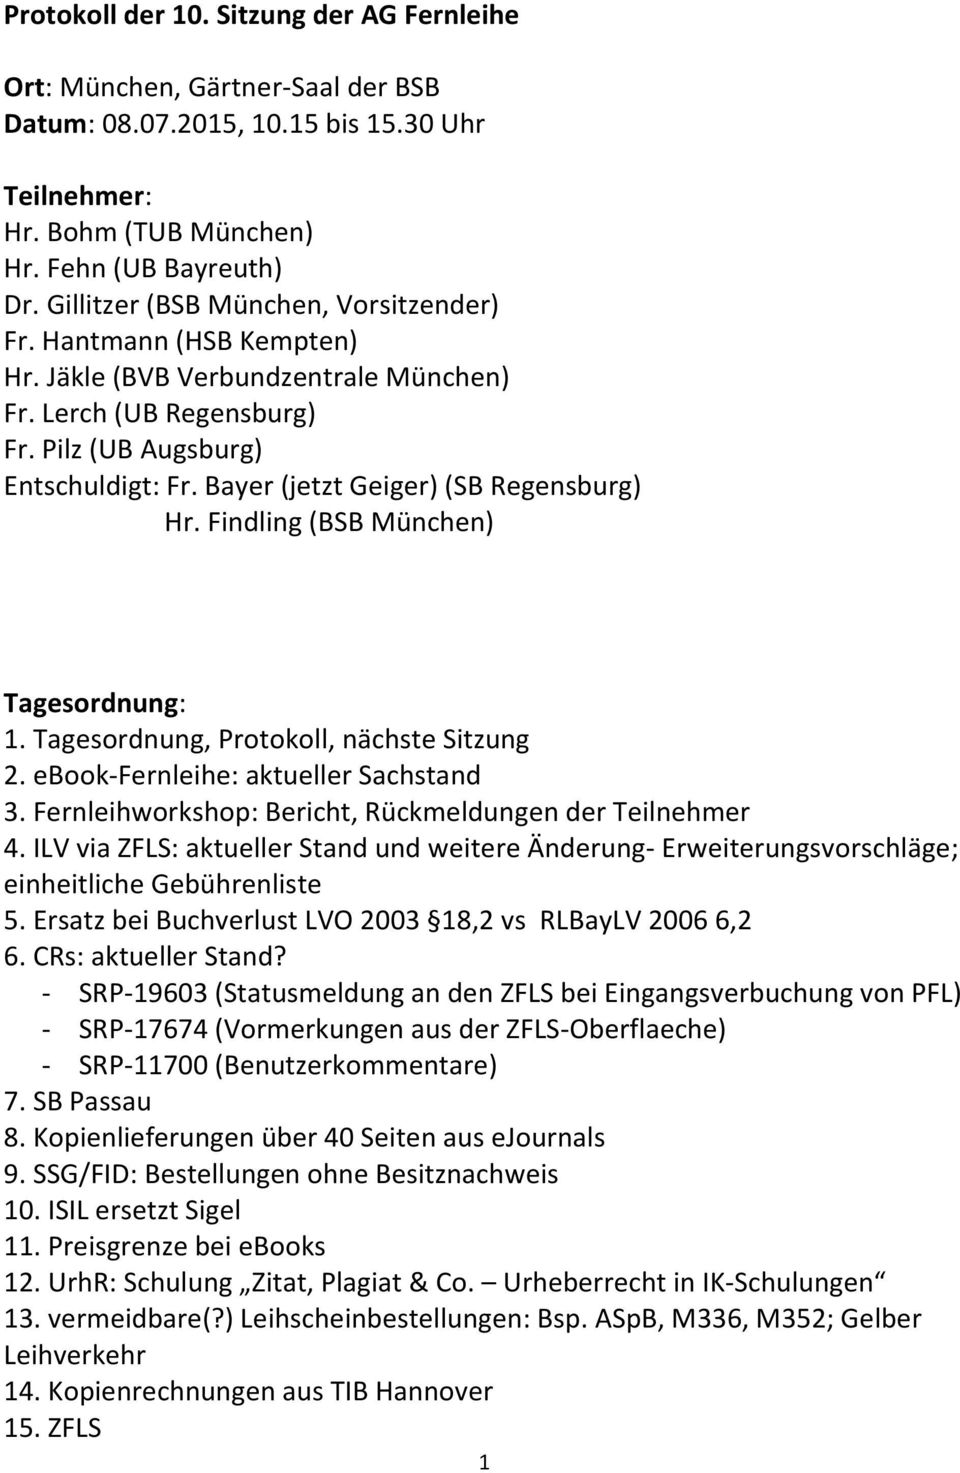 Bayer (jetzt Geiger) (SB Regensburg) Hr. Findling (BSB München) Tagesordnung: 1. Tagesordnung, Protokoll, nächste Sitzung 2. ebook-fernleihe: aktueller Sachstand 3.